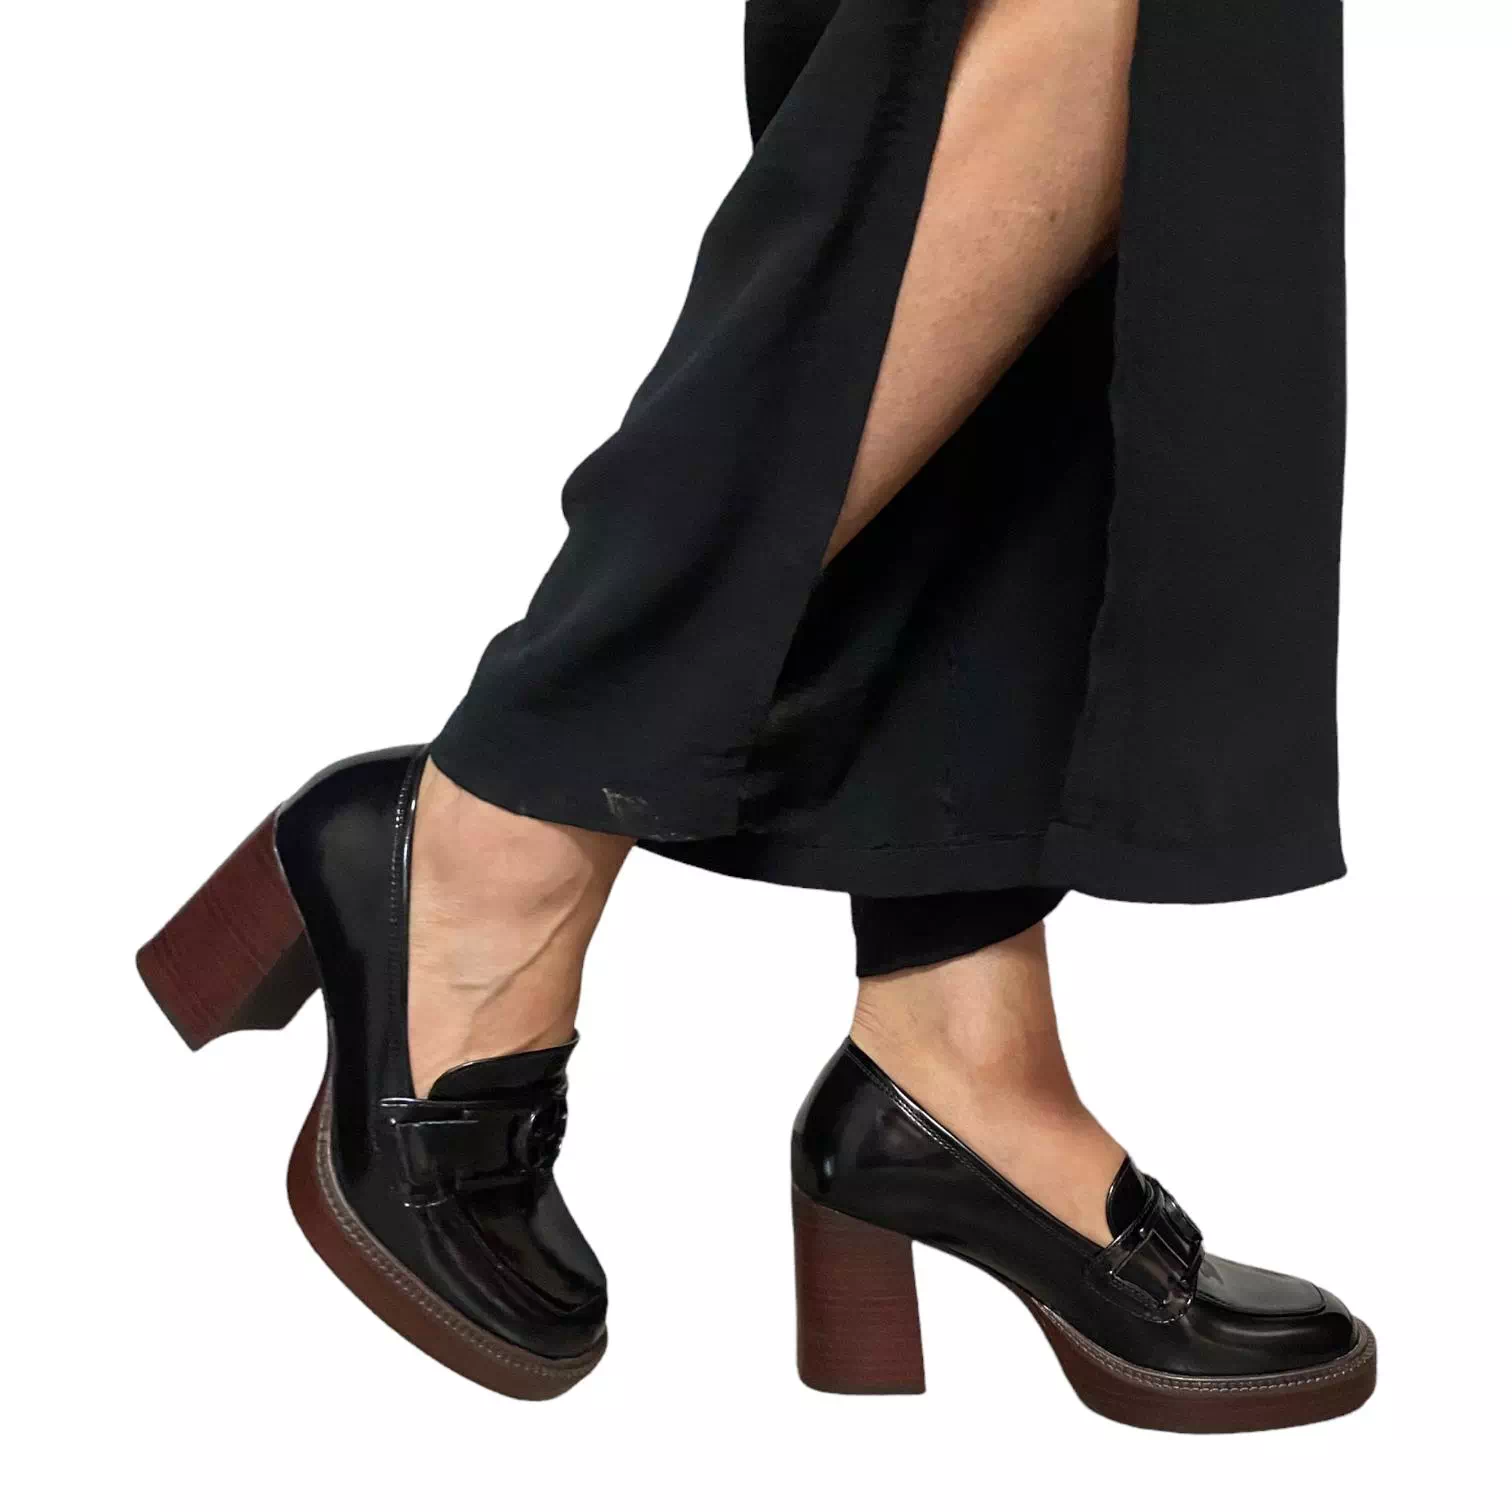 Pantofi Tamari negri cu accesoriu si platforma